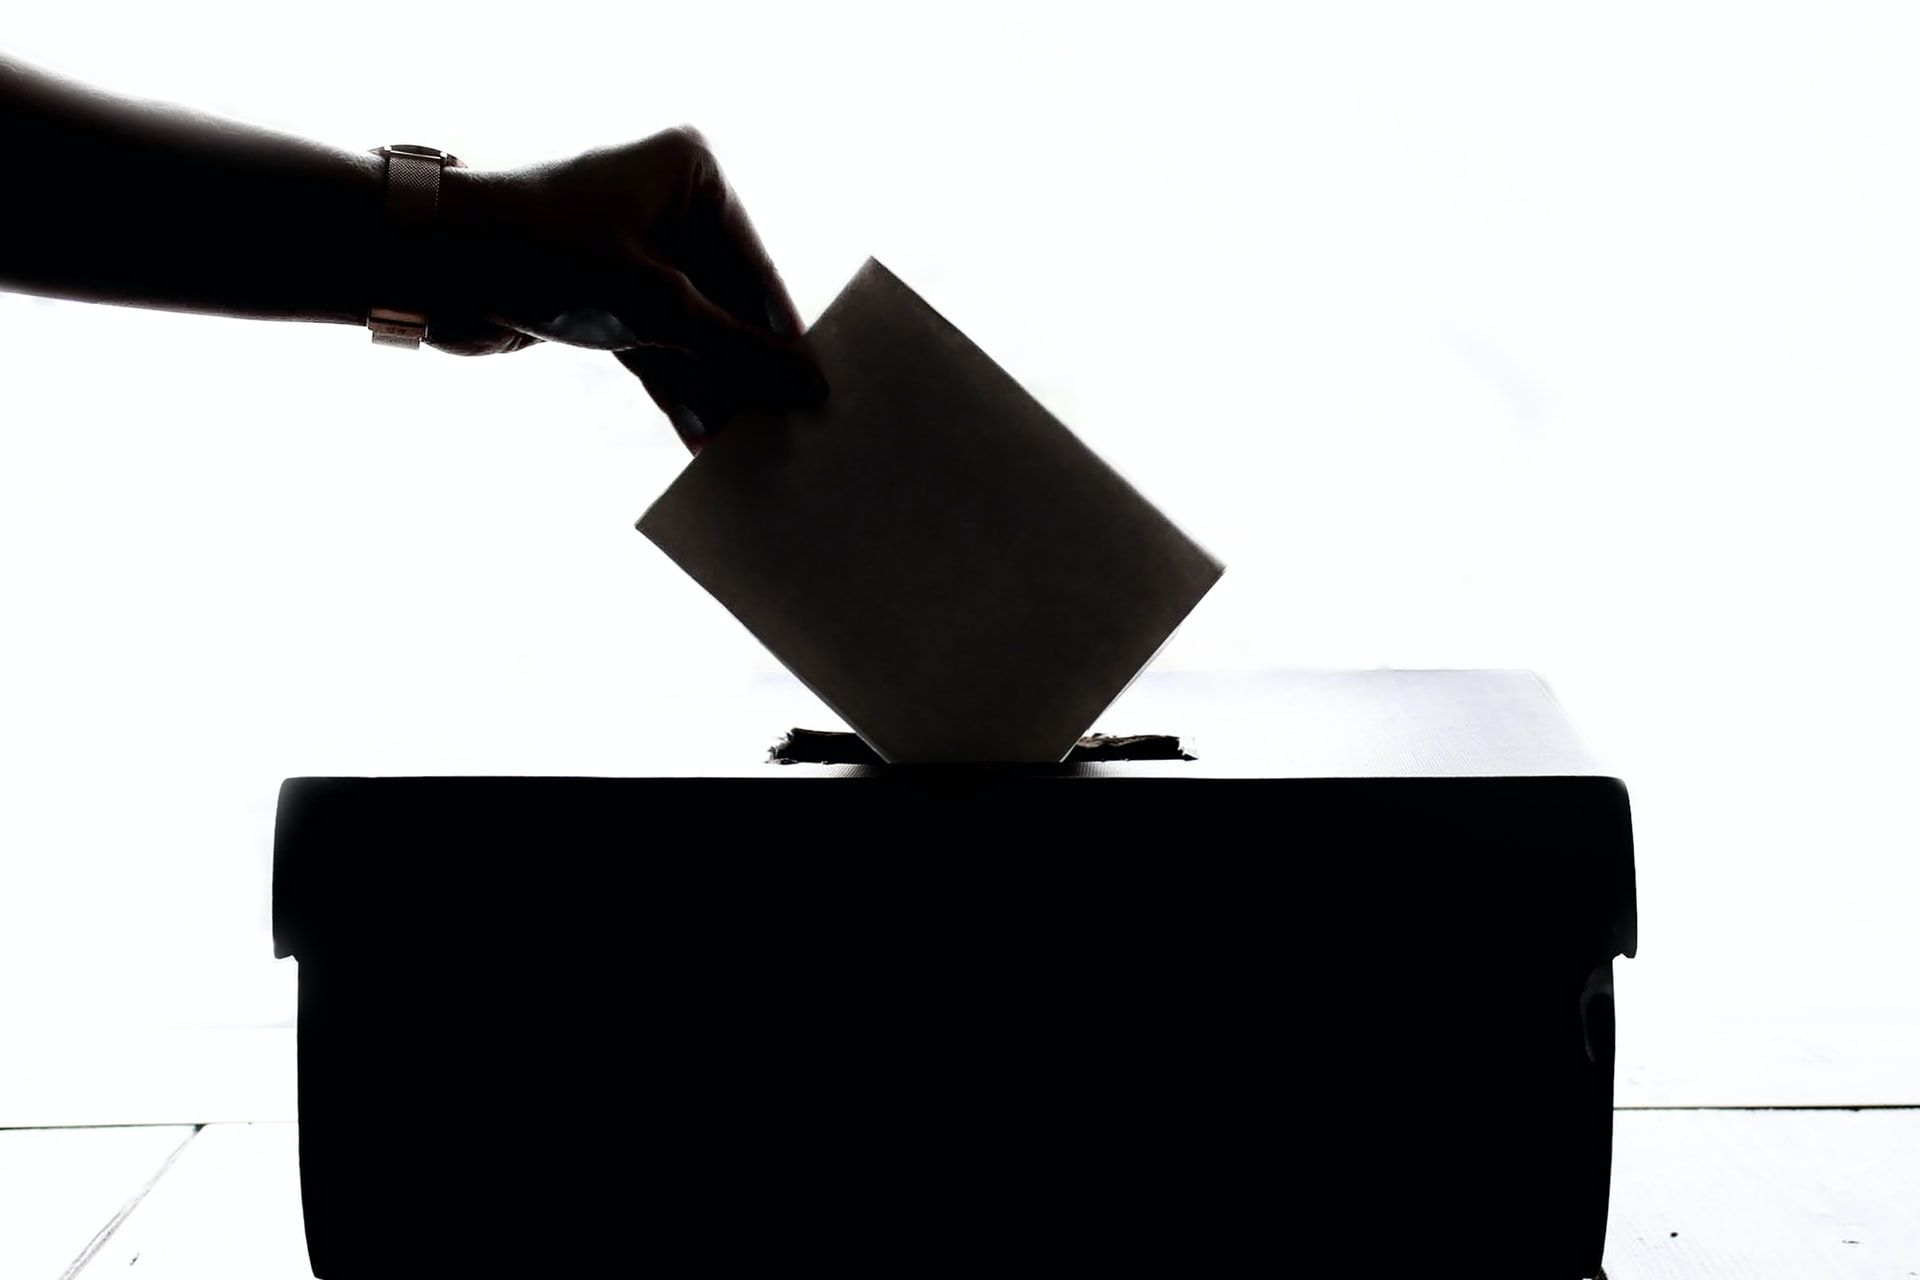 A Person Casting a Vote in Ballot Box